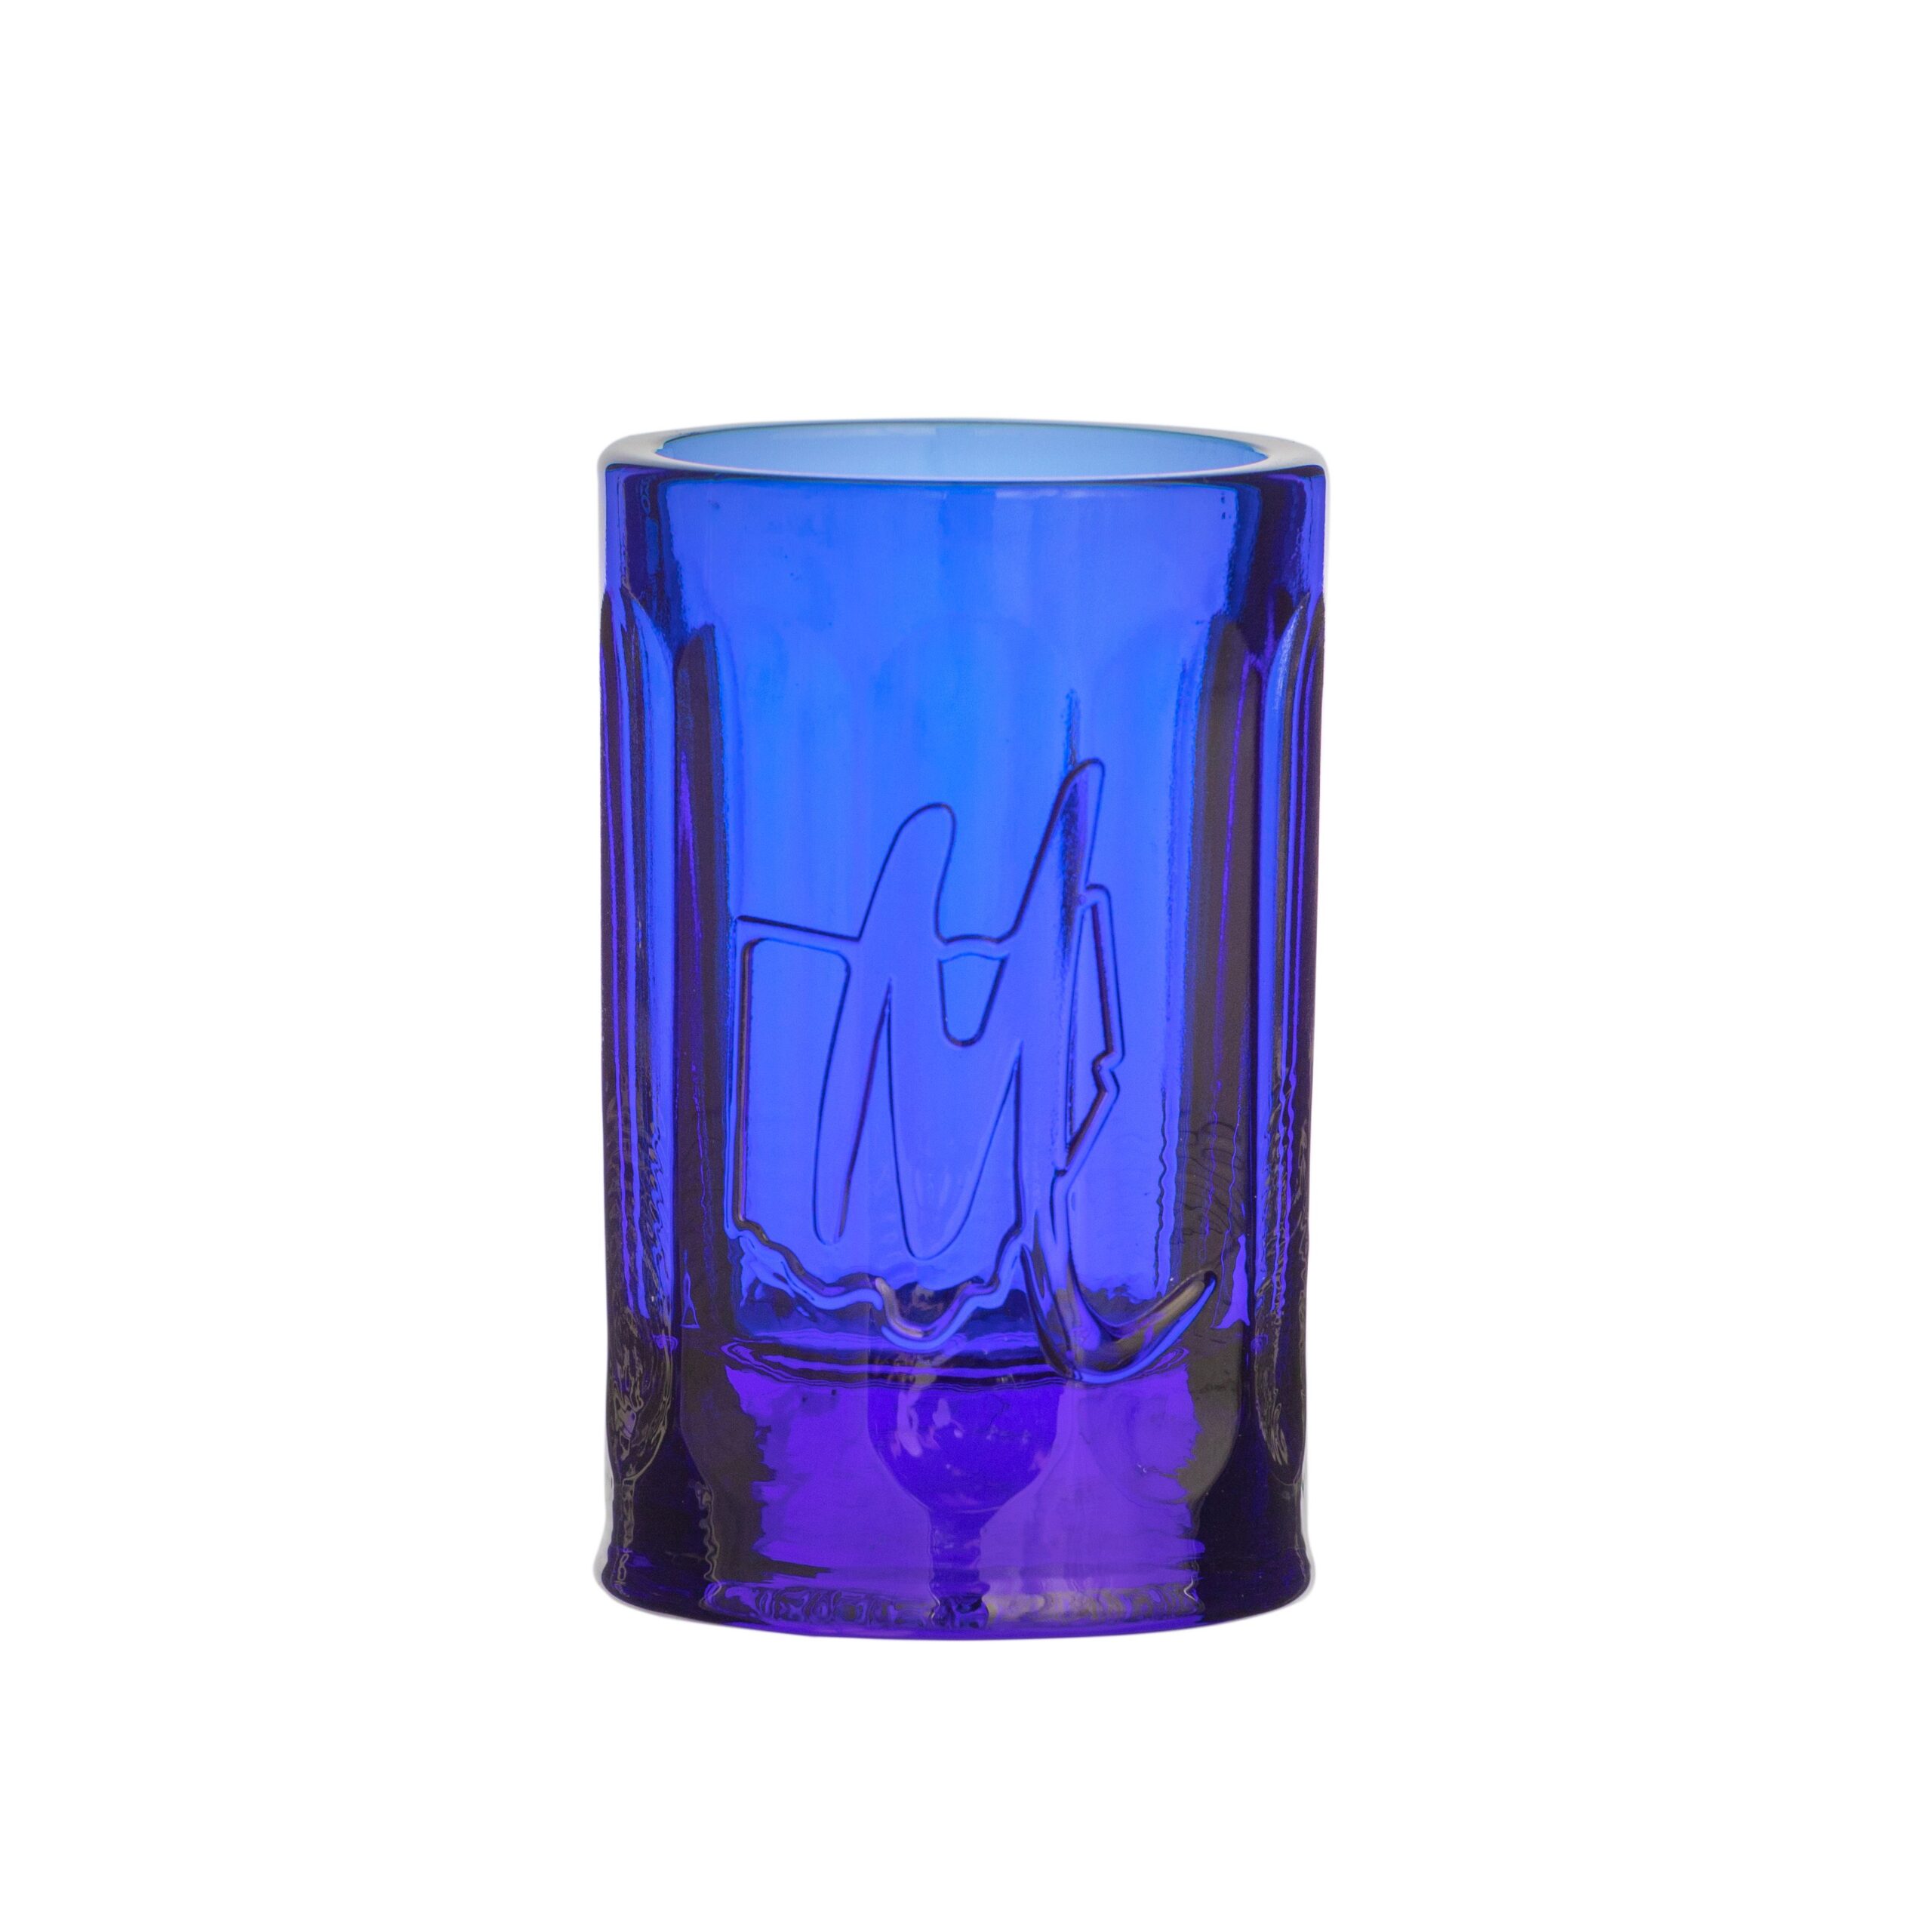 4 Oz. Mortar & Pestle - Mosser Glass